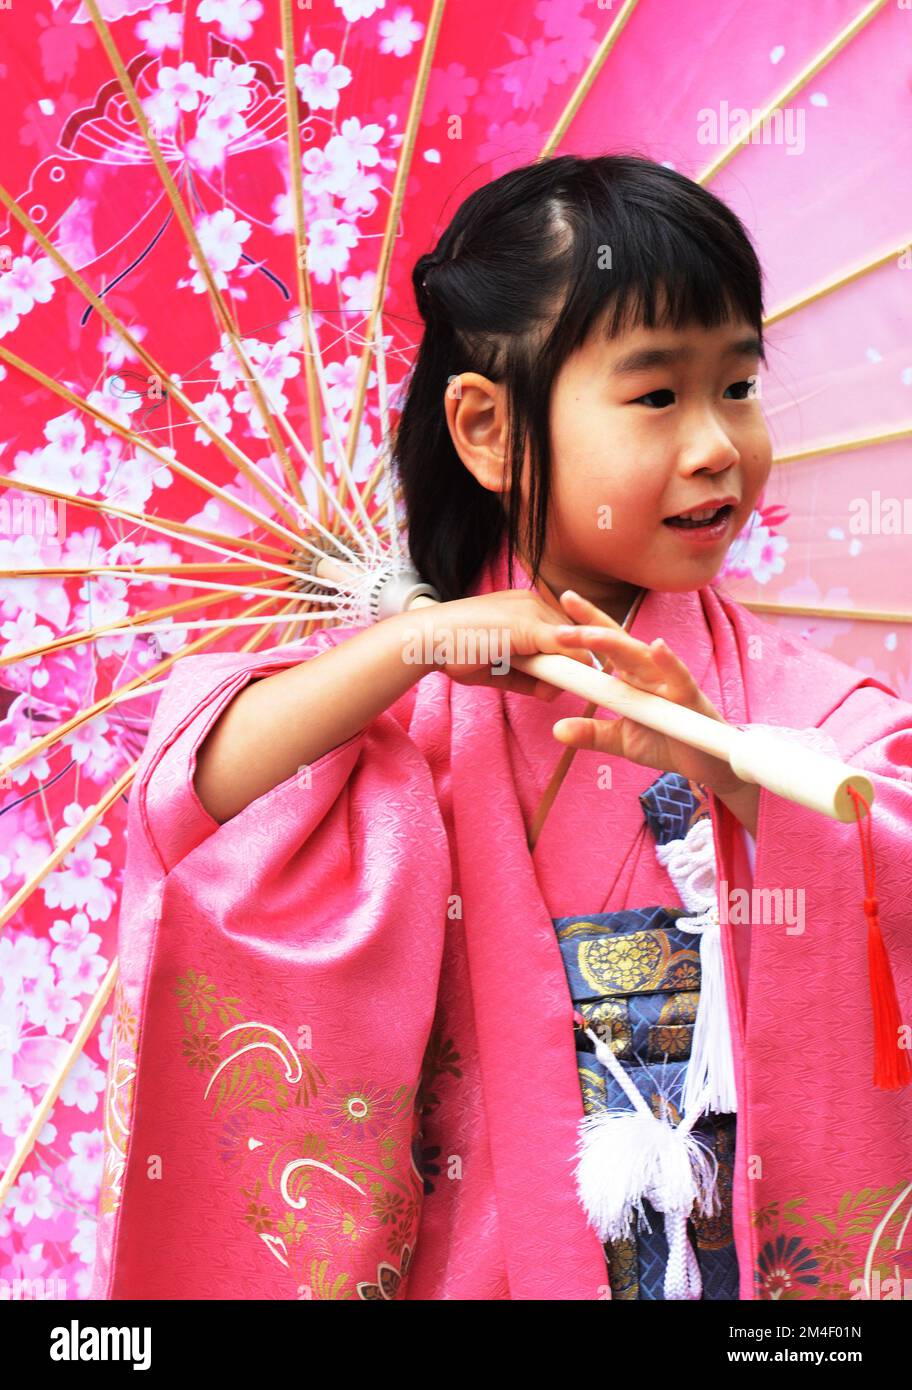 Porträt eines traditionell gekleideten japanischen Mädchens, aufgenommen während des Shichi-Go-San-Festivals (japanischer Übergangsritus) am Meiji-Schrein, Tokio, Japan Stockfoto